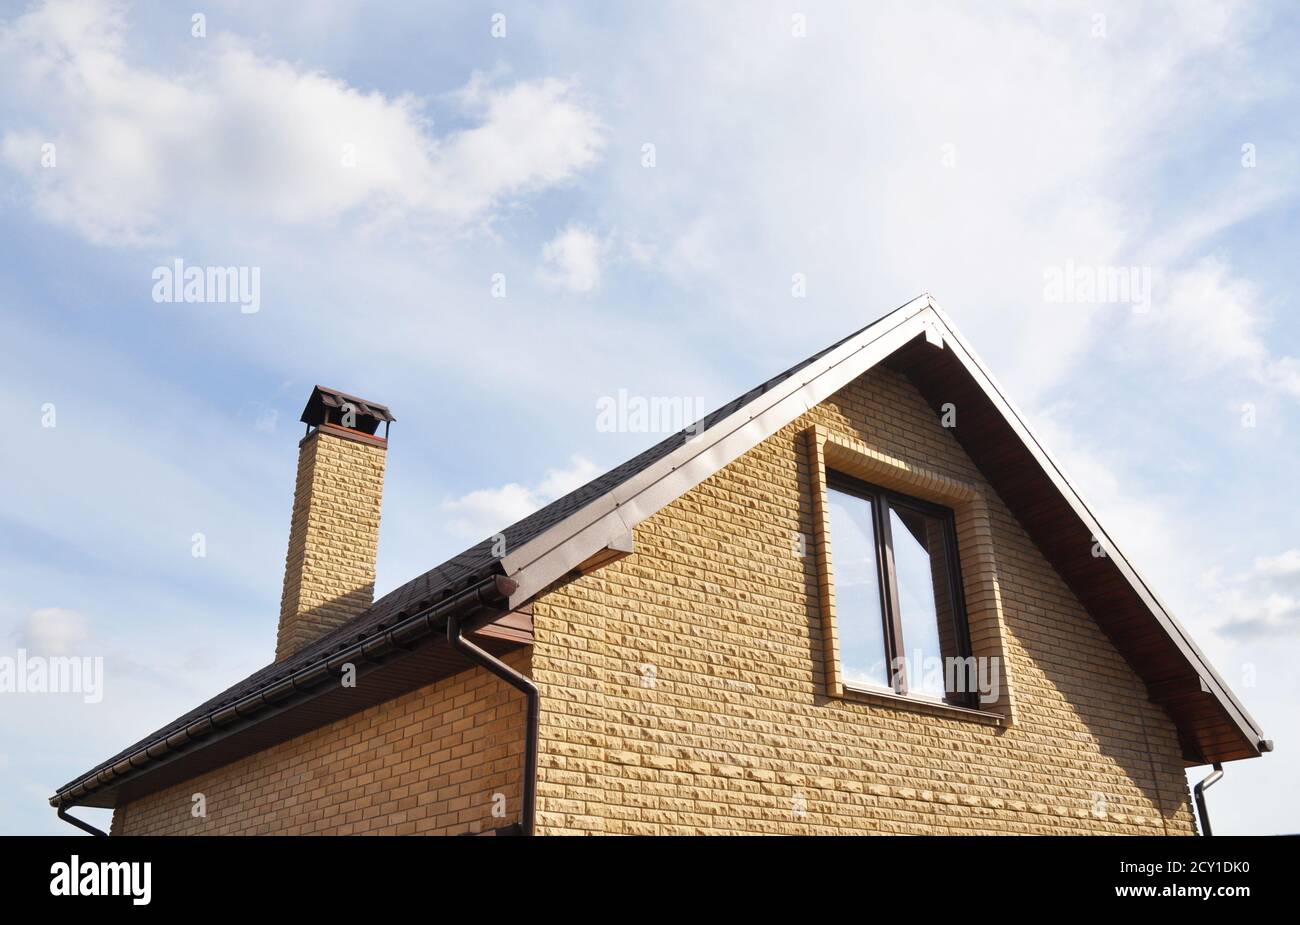 Dachgeschosskonstruktion im Freien. Dachkonstruktion mit Ziegelkamin und Dachrinnen-System. Mansardendach. Stockfoto